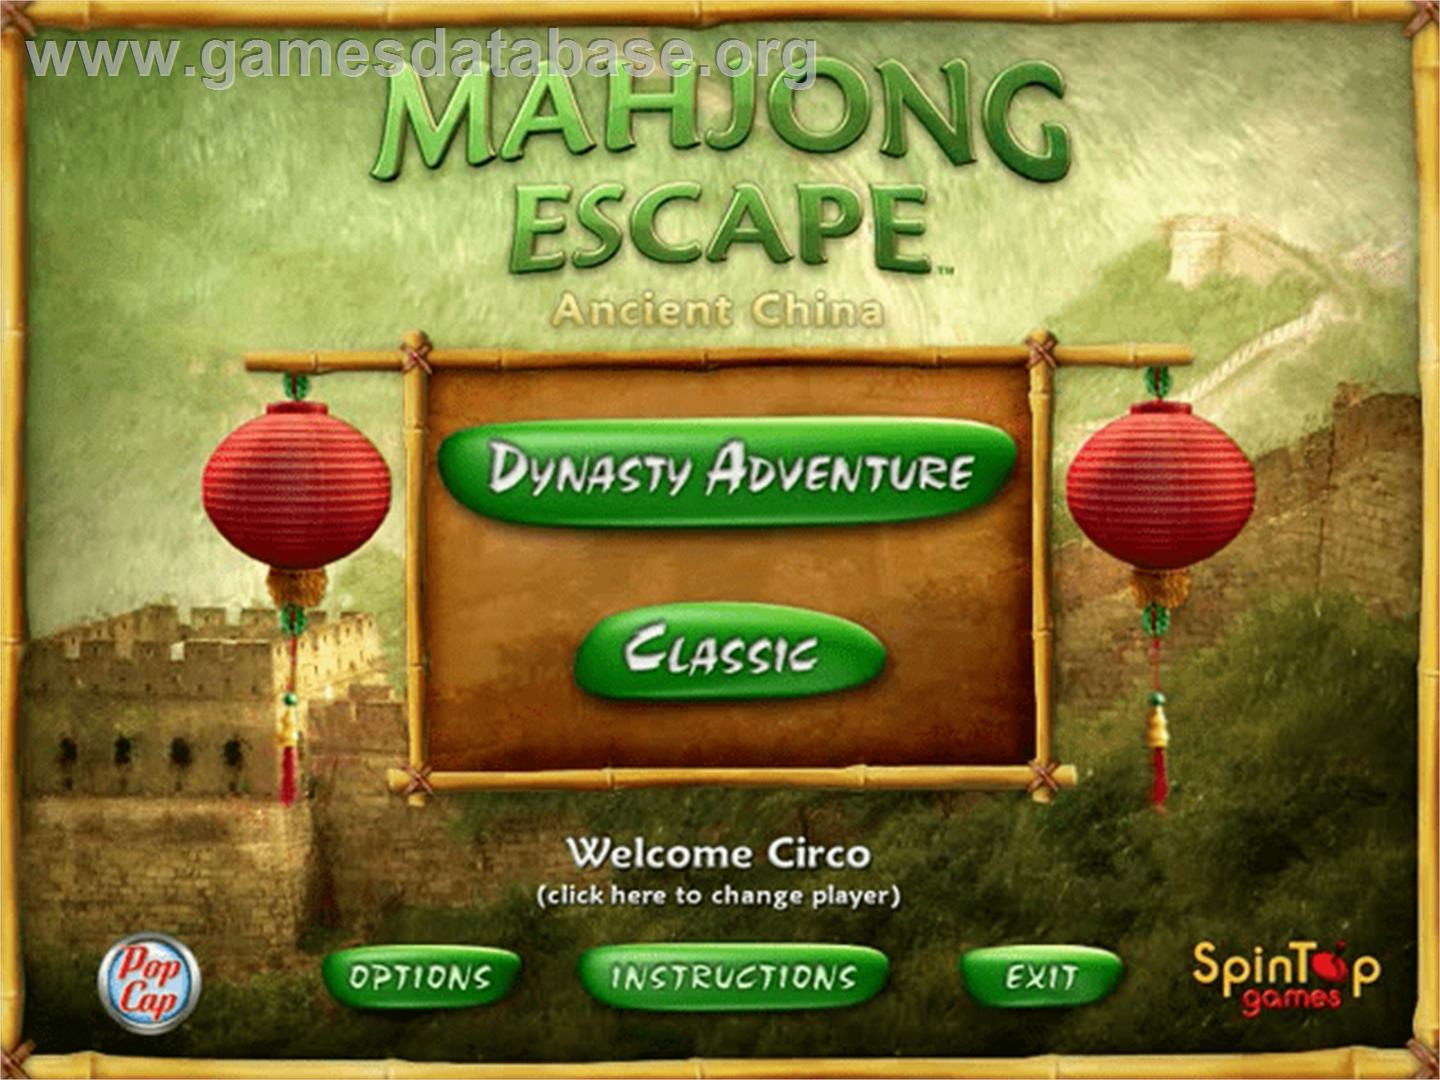 Mahjong Escape Ancient China - PopCap - Artwork - Title Screen